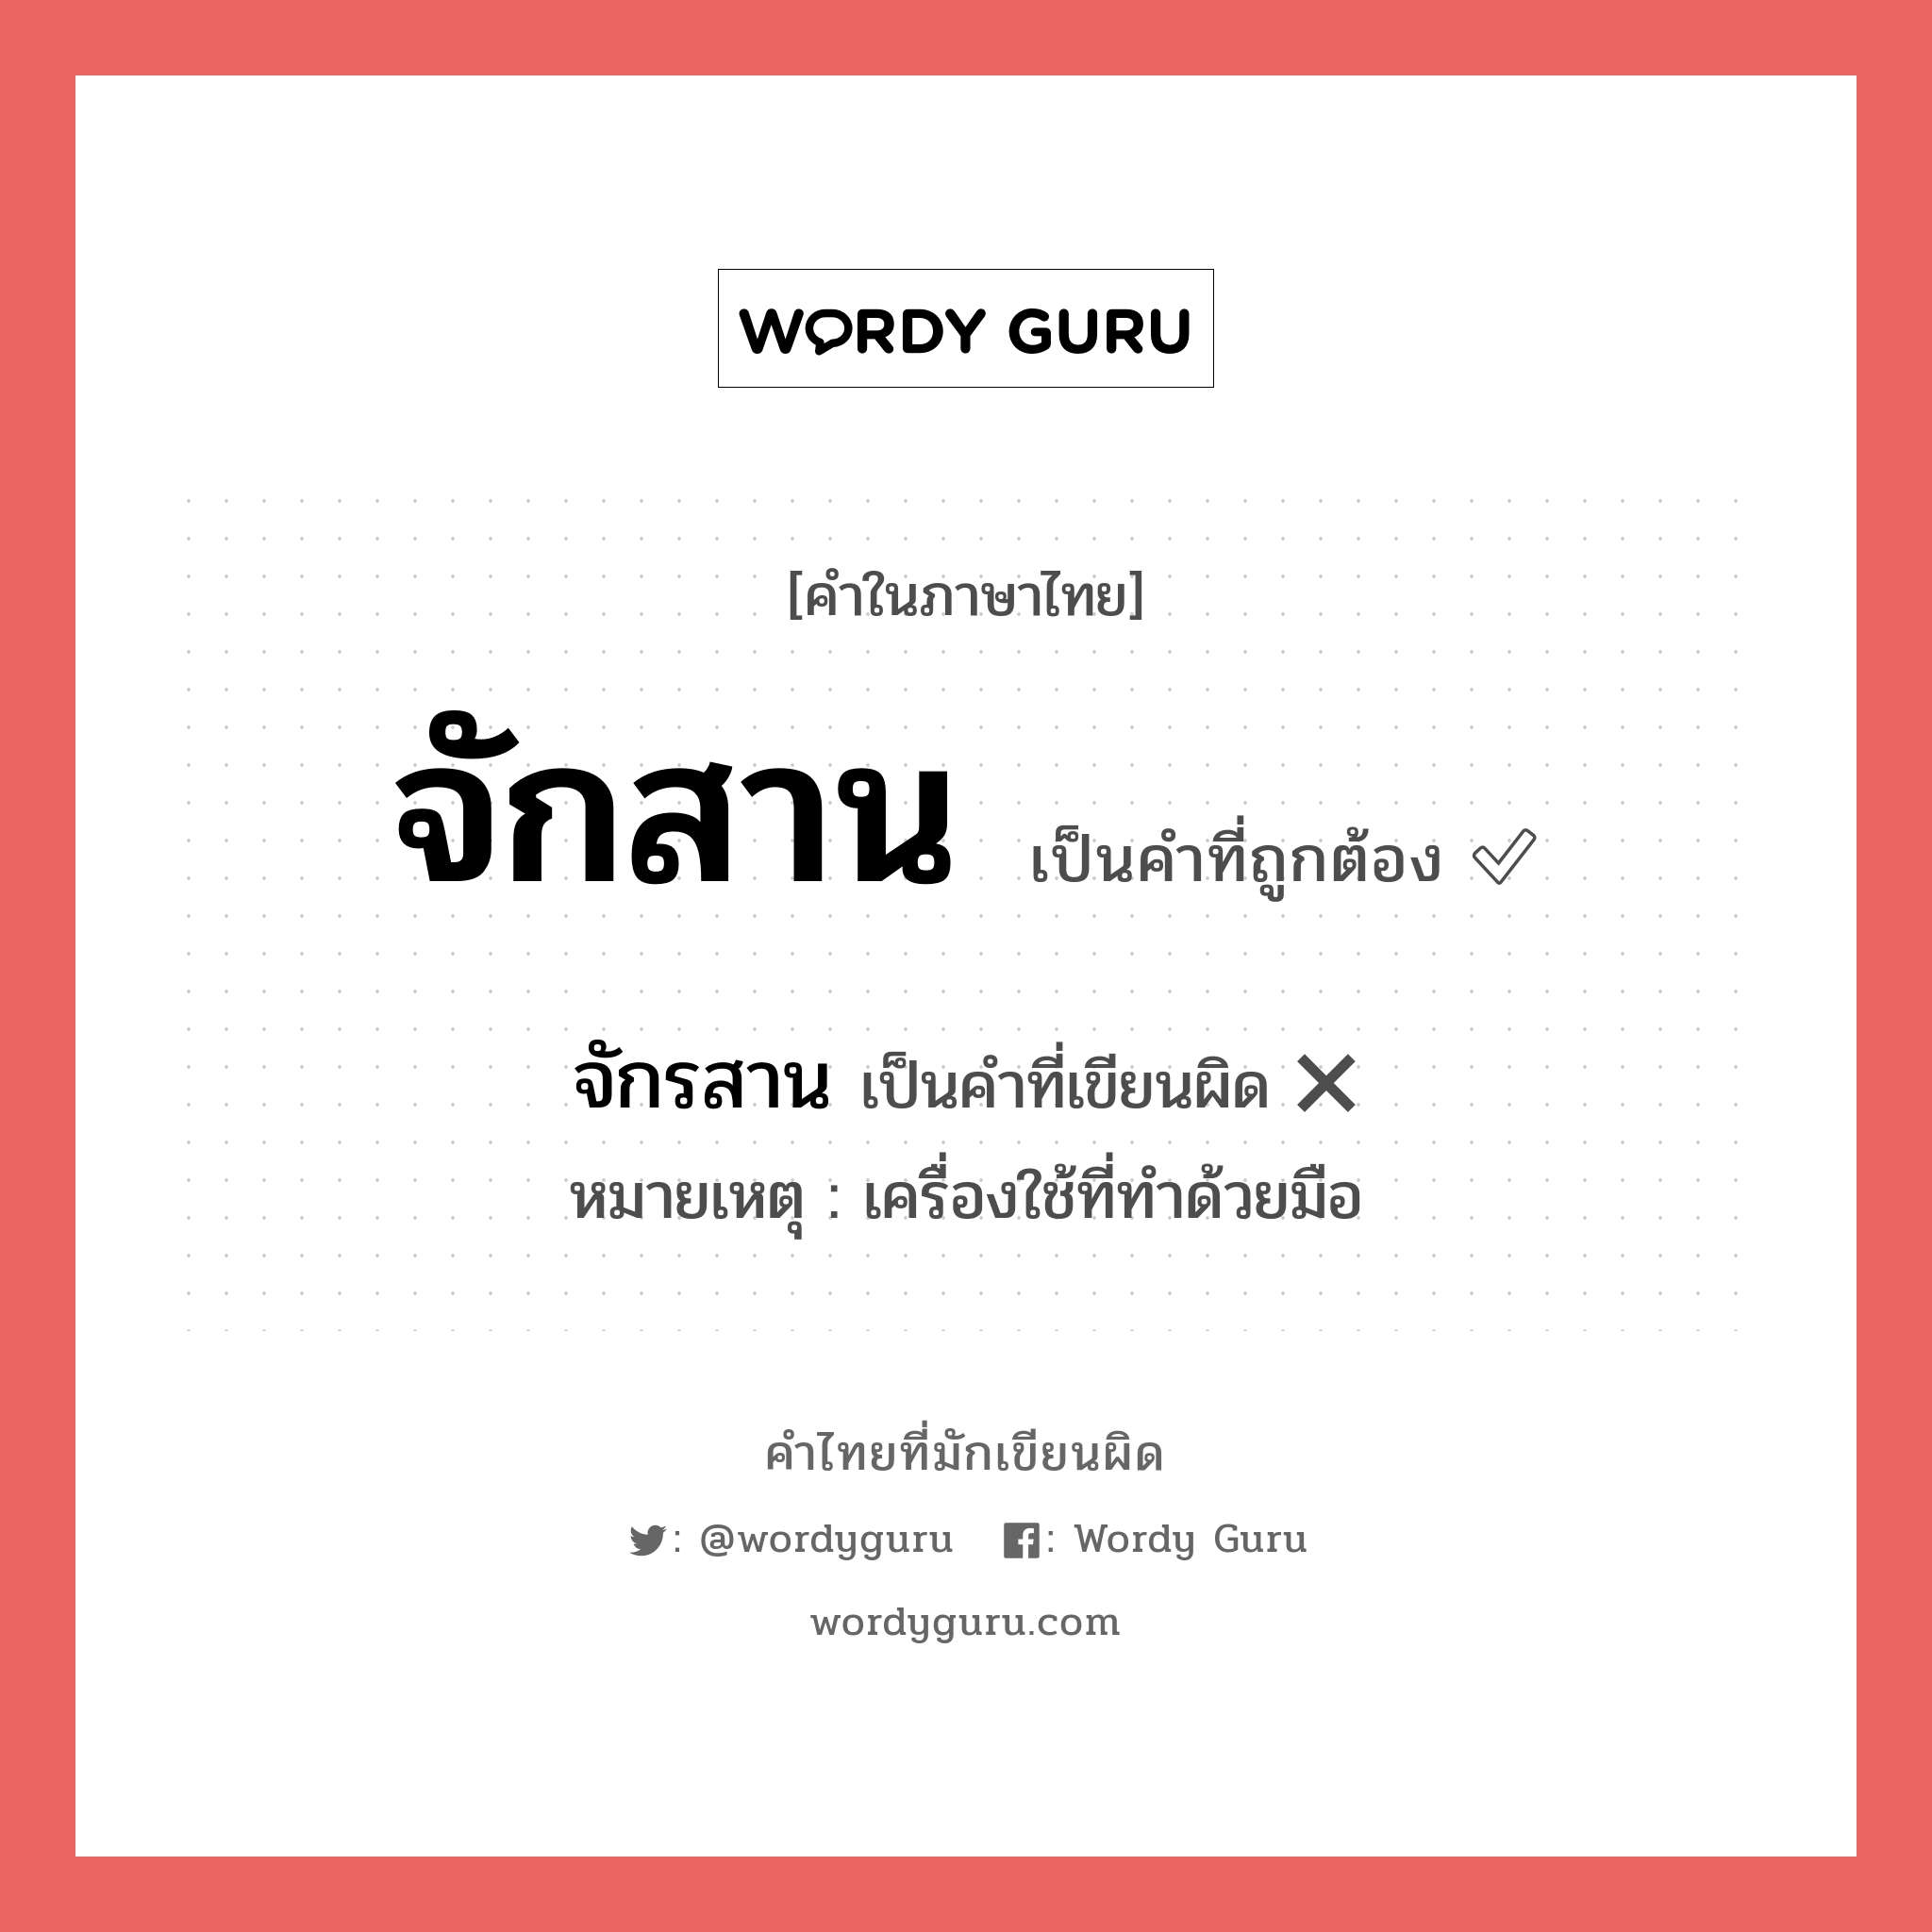 จักรสาน หรือ จักสาน คำไหนเขียนถูก?, คำในภาษาไทยที่มักเขียนผิด จักรสาน คำที่ผิด ❌ จักสาน หมายเหตุ เครื่องใช้ที่ทำด้วยมือ